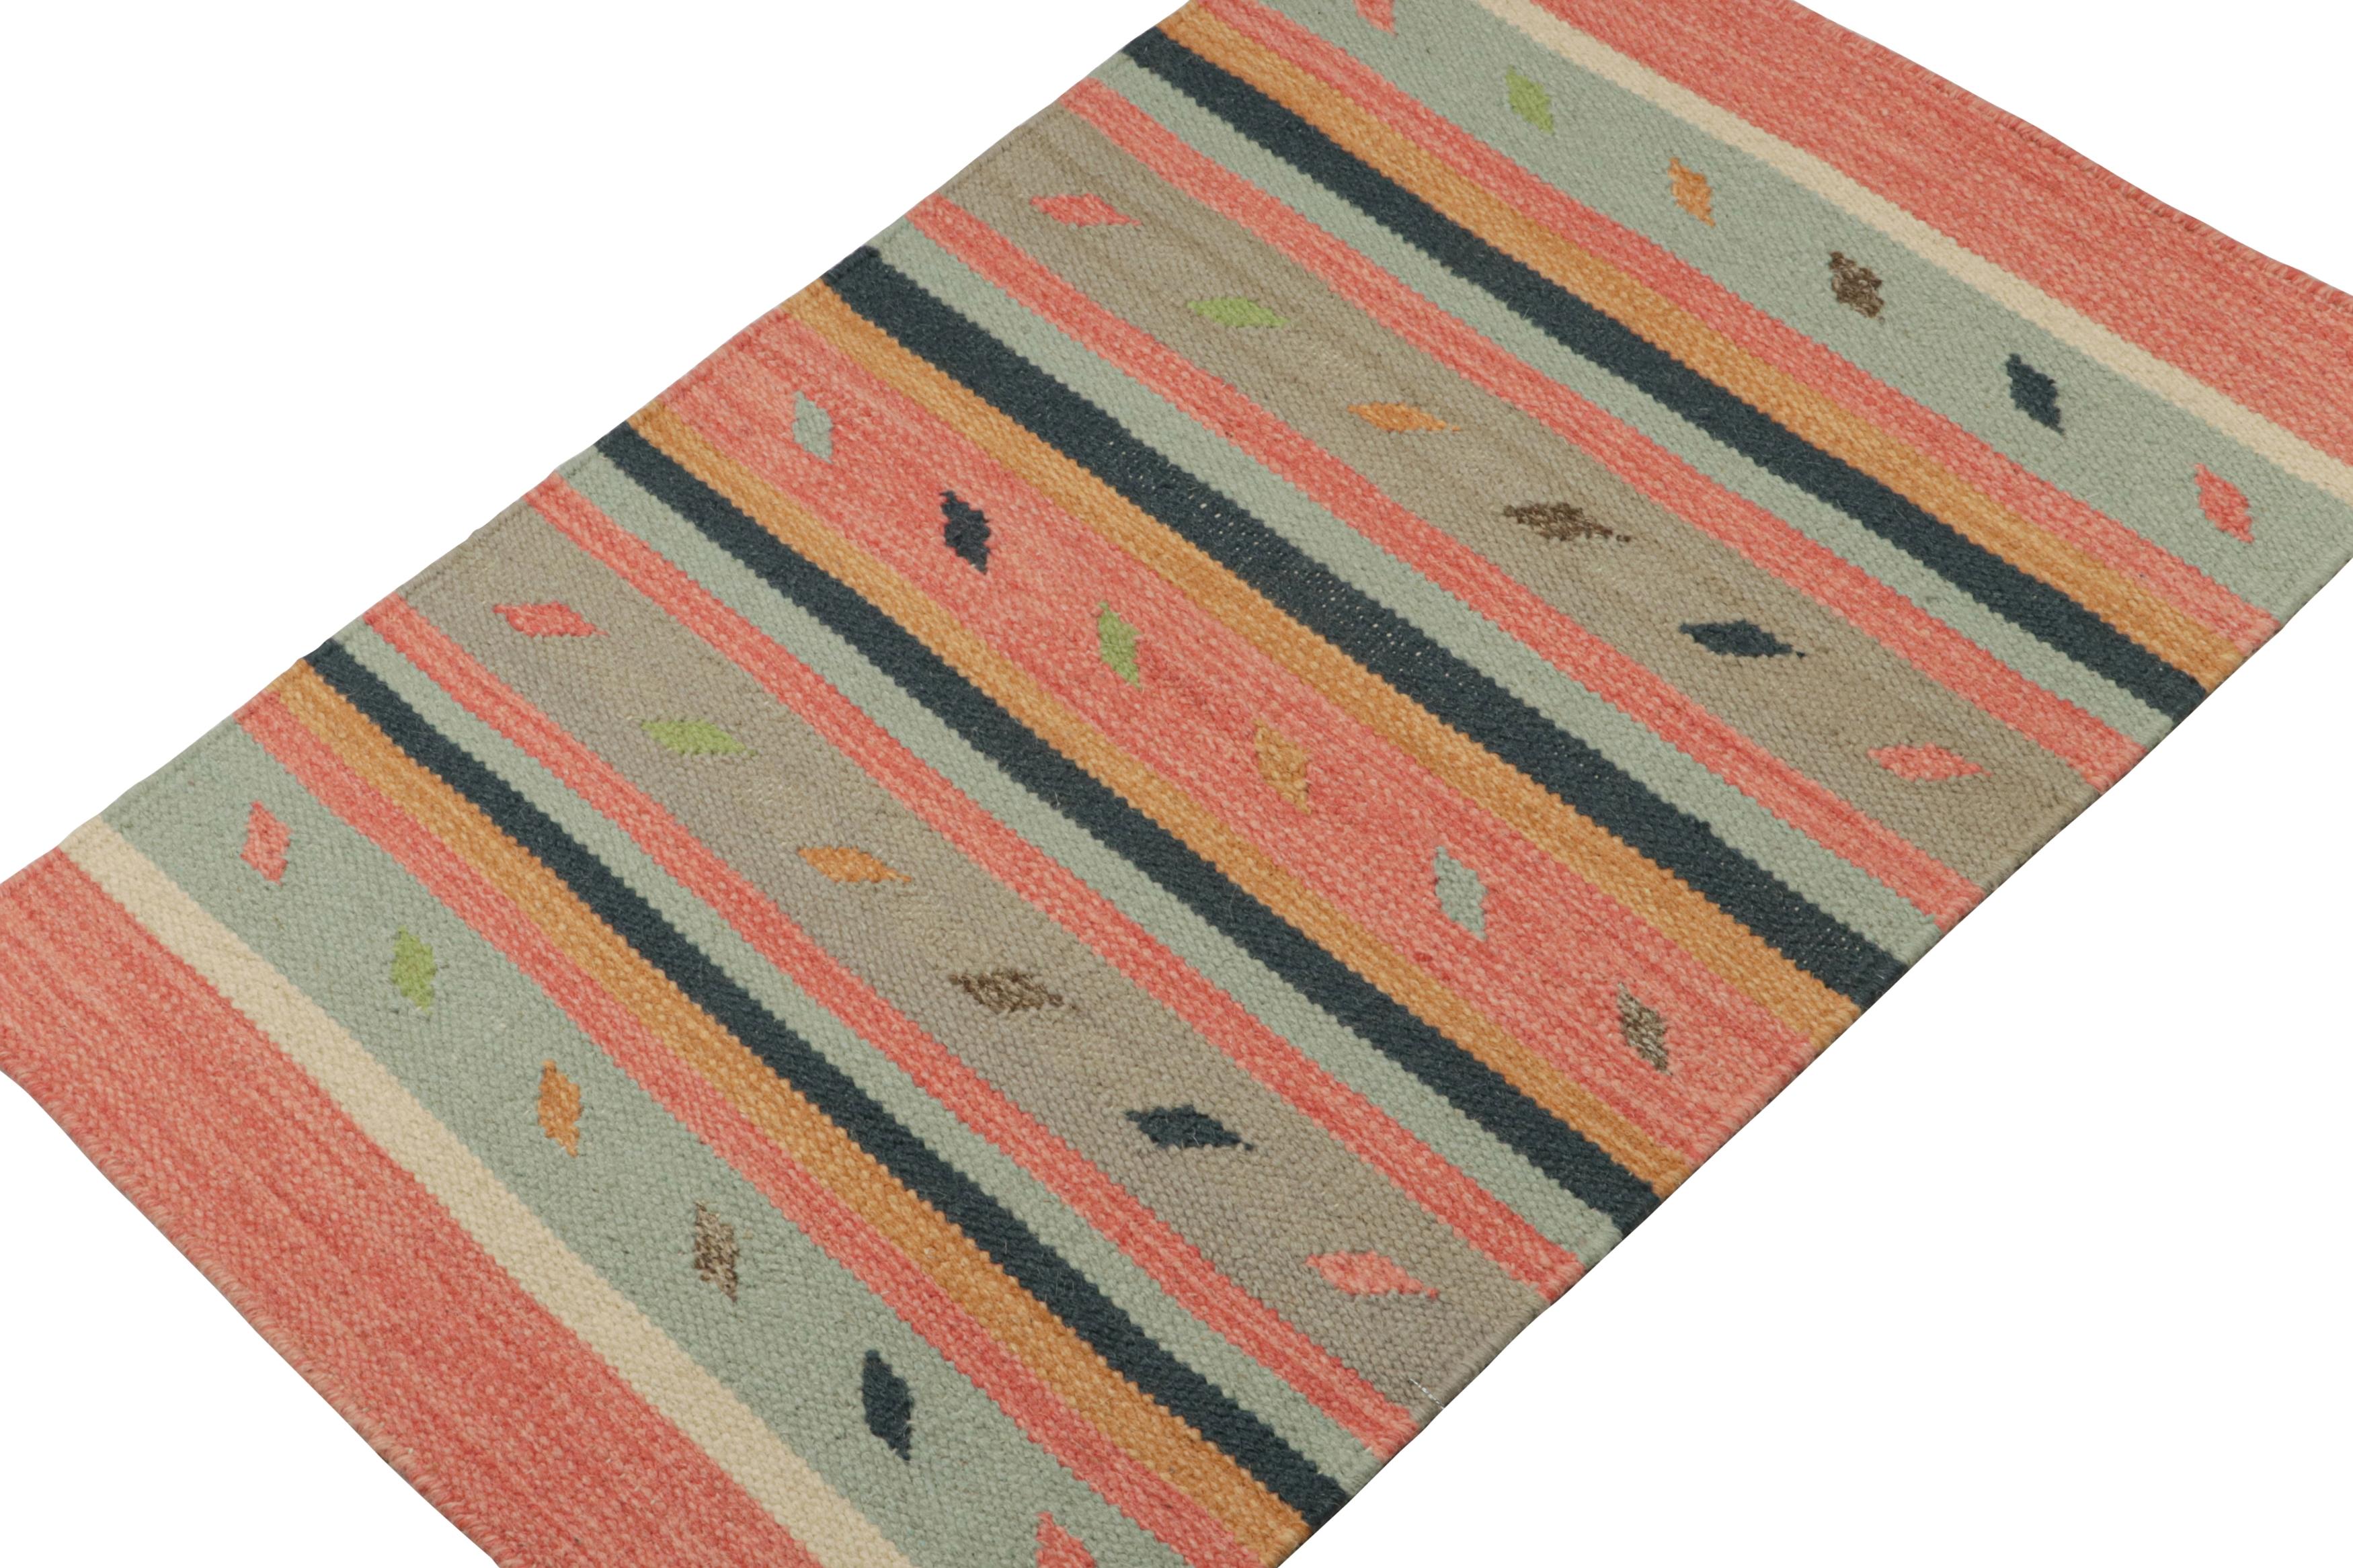 Inspirée des kilims tribaux, cette pièce de 2x3 est un nouvel ajout vibrant à la collection de tissage plat de Rug & Kilim.  

Sur le Design : 

Tissé à la main en laine, ce kilim contemporain présente de larges rayures et des motifs épurés dans des